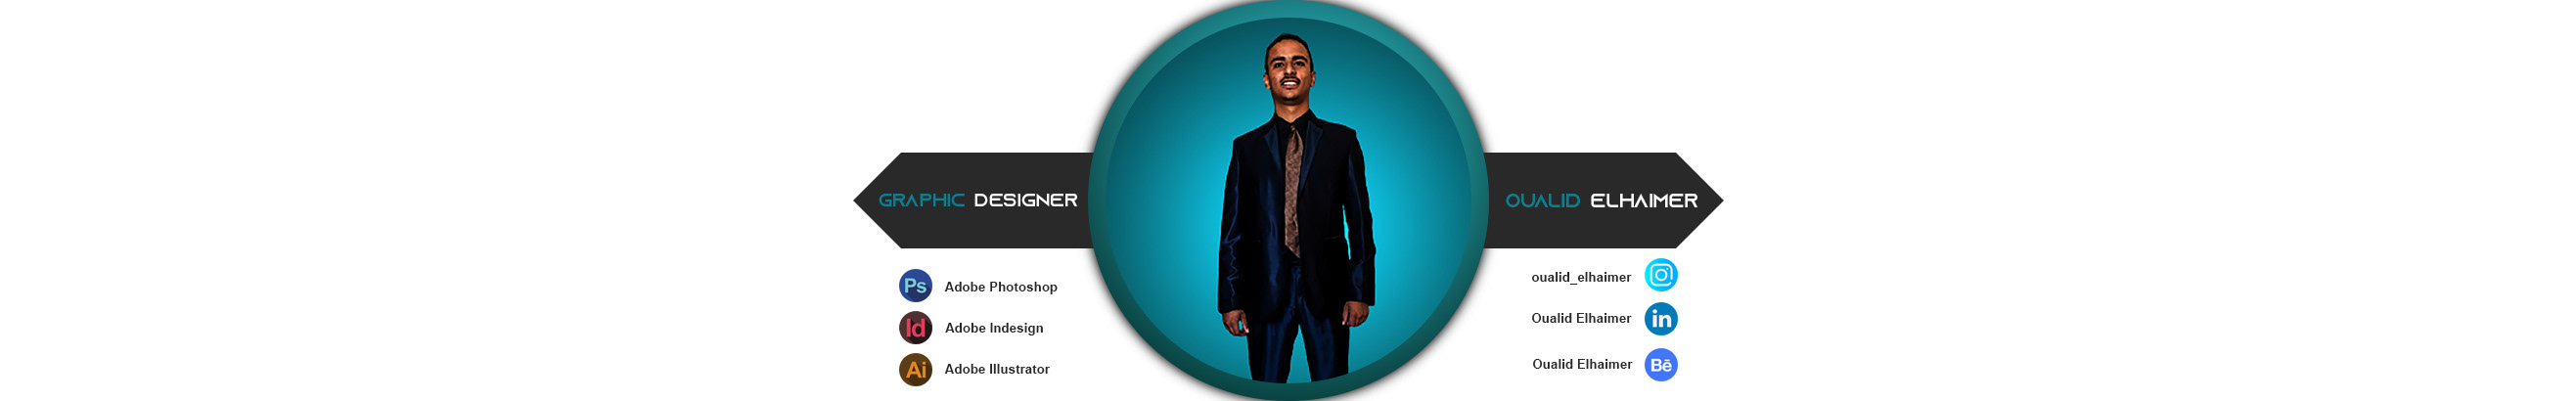 Banner profilu uživatele Oualid Elhaimer